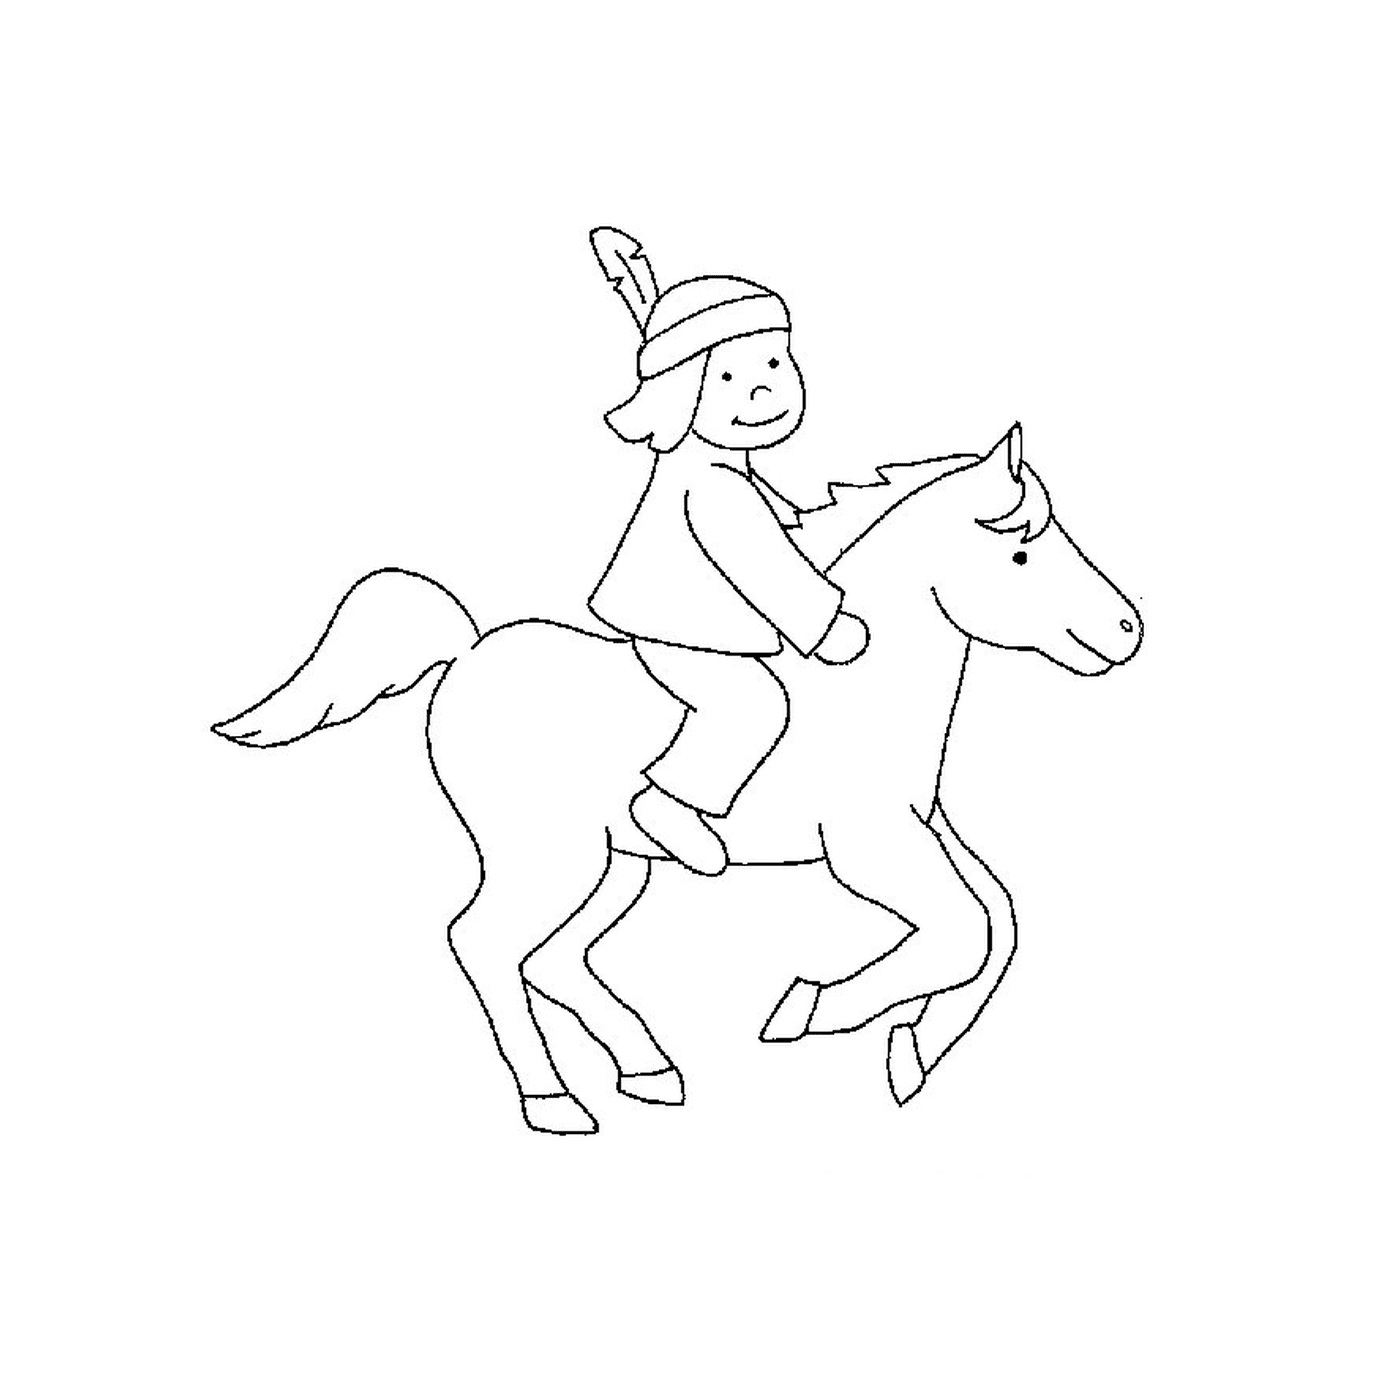  Indianer zu Pferd - Eine Person reitet ein Pferd 